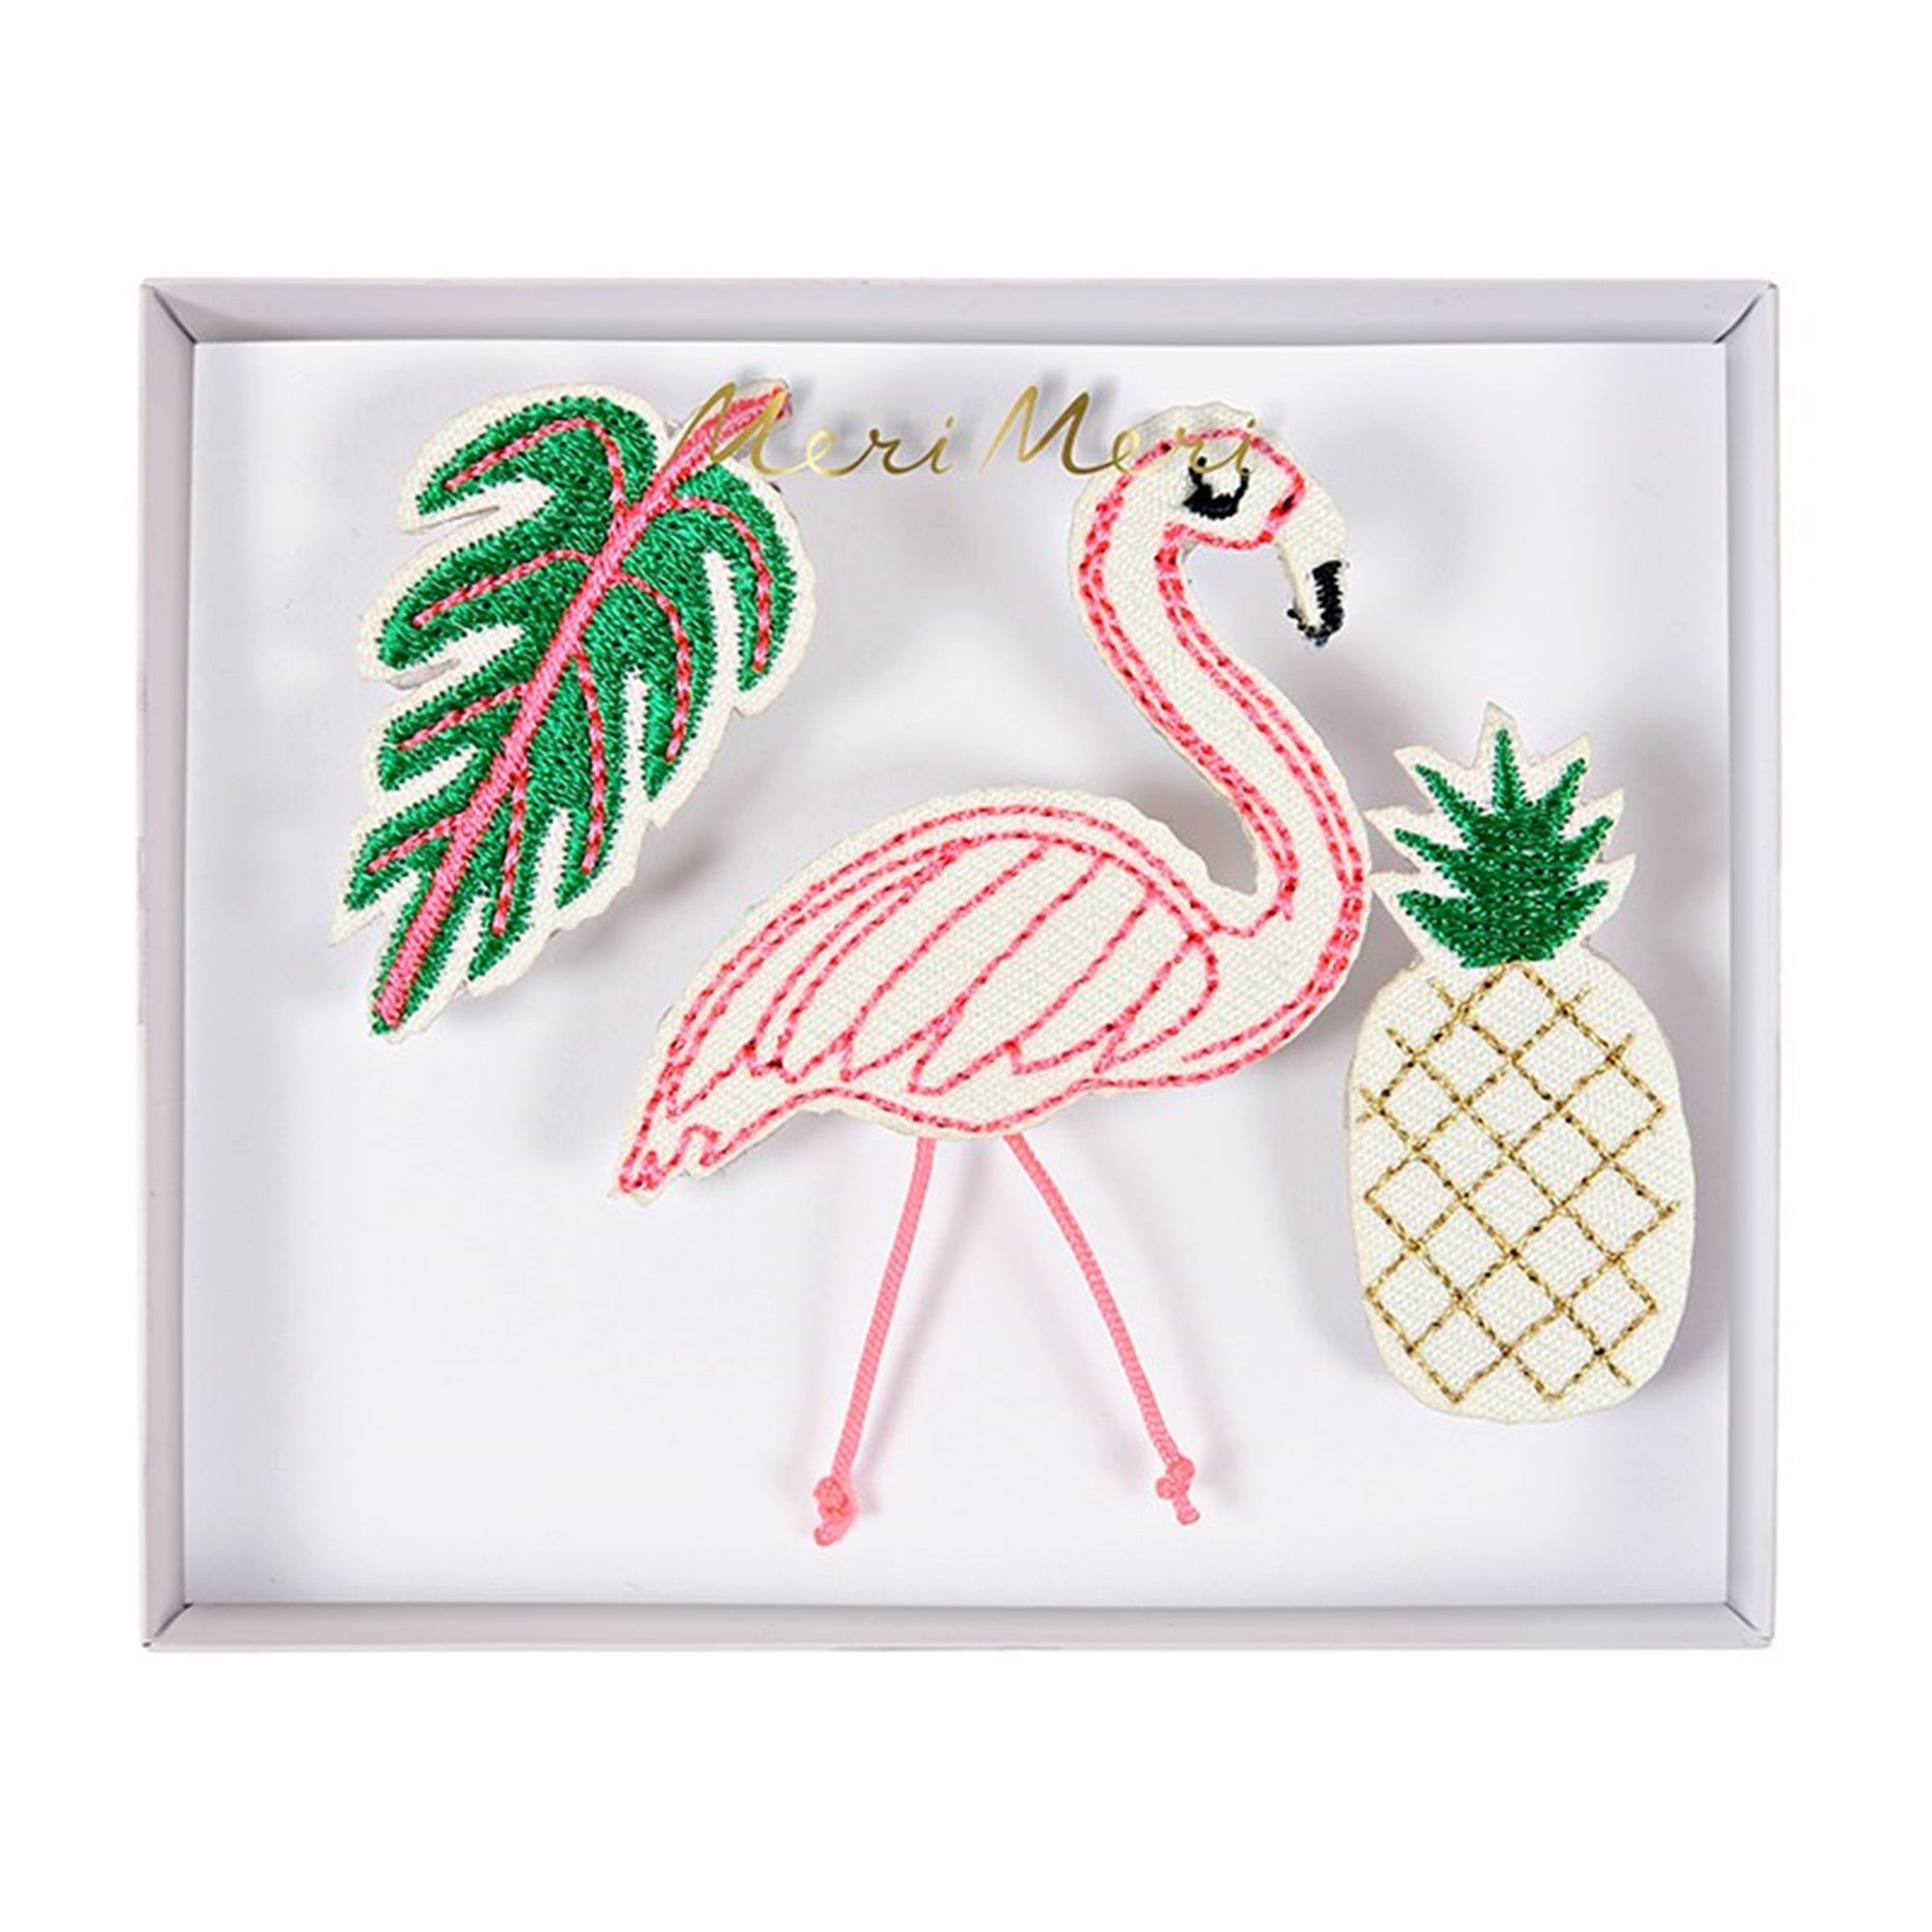 Shop by Theme - Flamingos